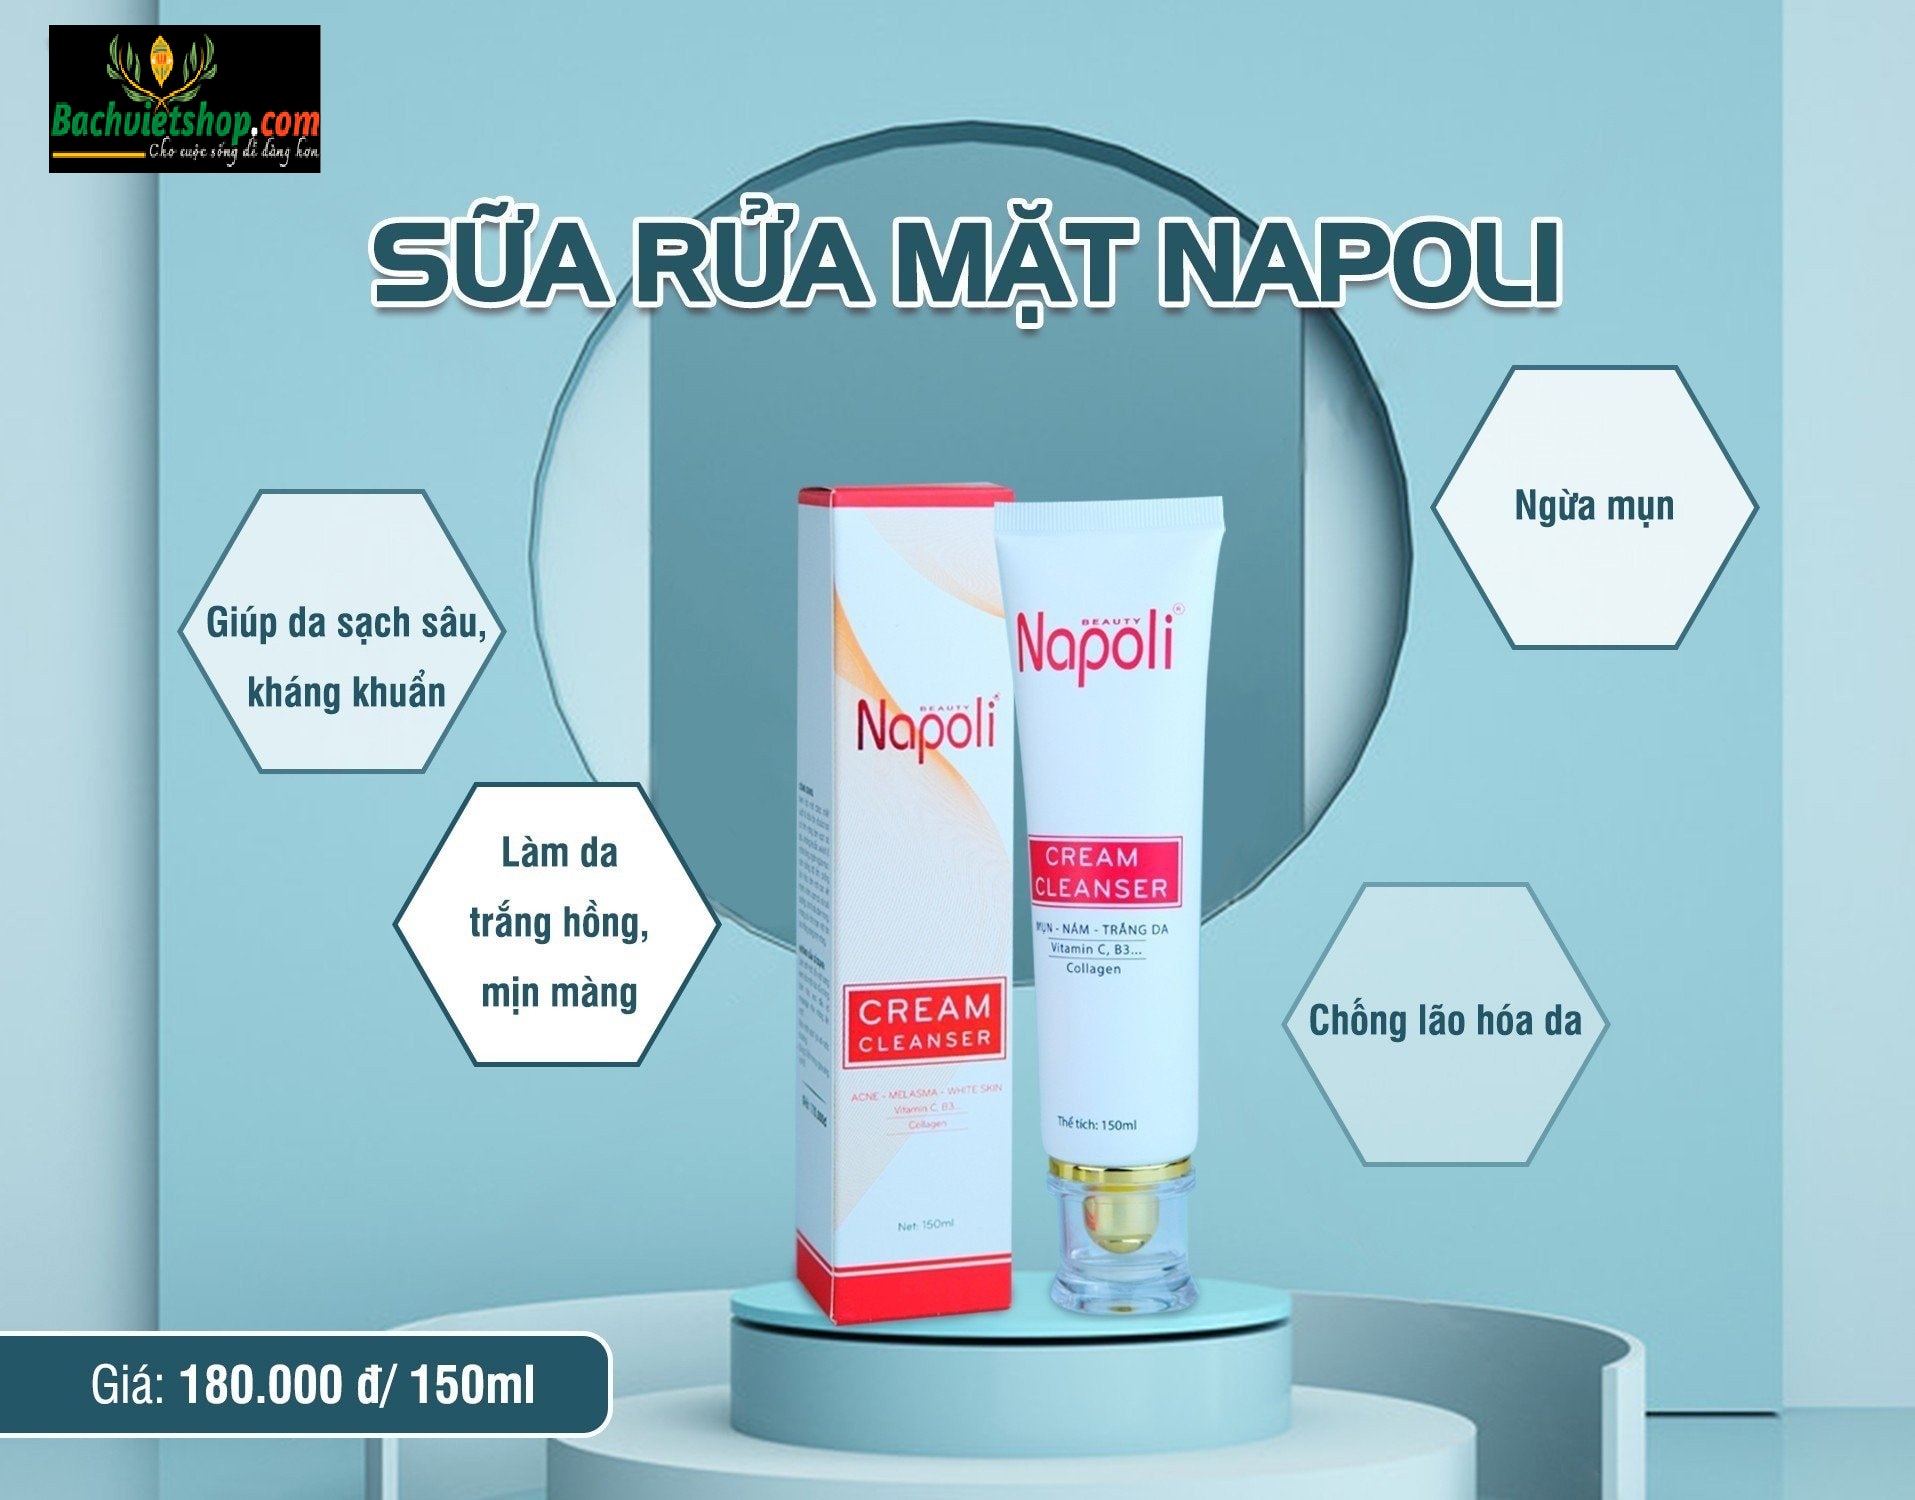 Kem rửa mặt Napoli chiết xuất từ dâu tây và sữa tươi đang làm mưa làn gió trong lĩnh vực làm sạch da mặt tại thị trường Việt Nam!